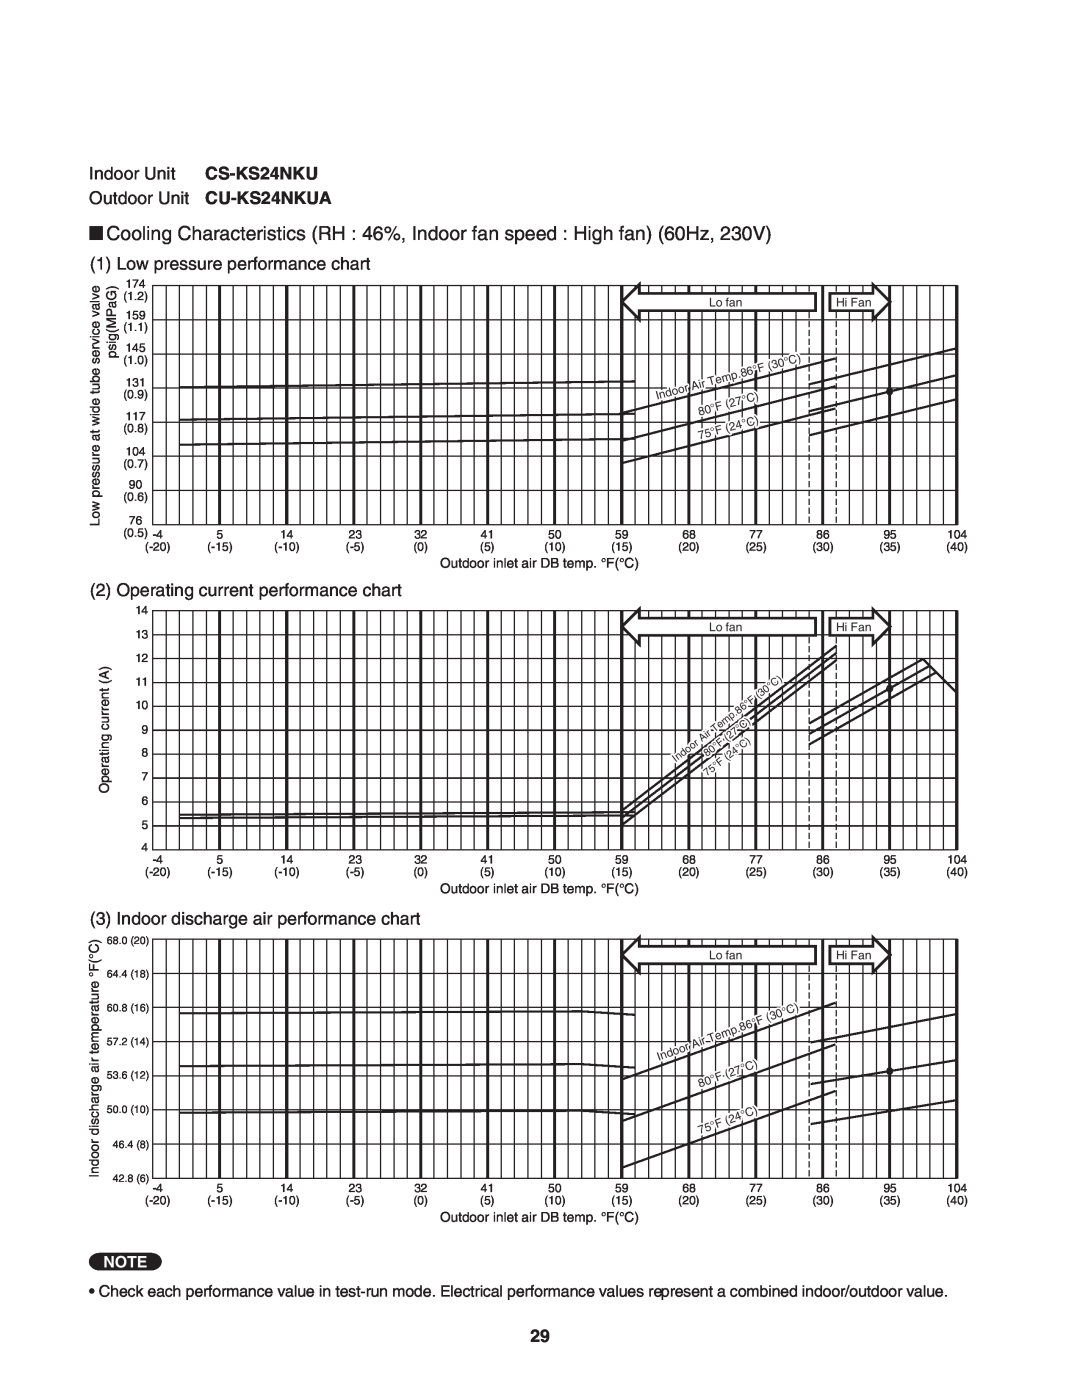 Panasonic CS-KS18NKU, CU-KS18NKU Indoor Unit CS-KS24NKU Outdoor Unit CU-KS24NKUA, Low pressure performance chart 